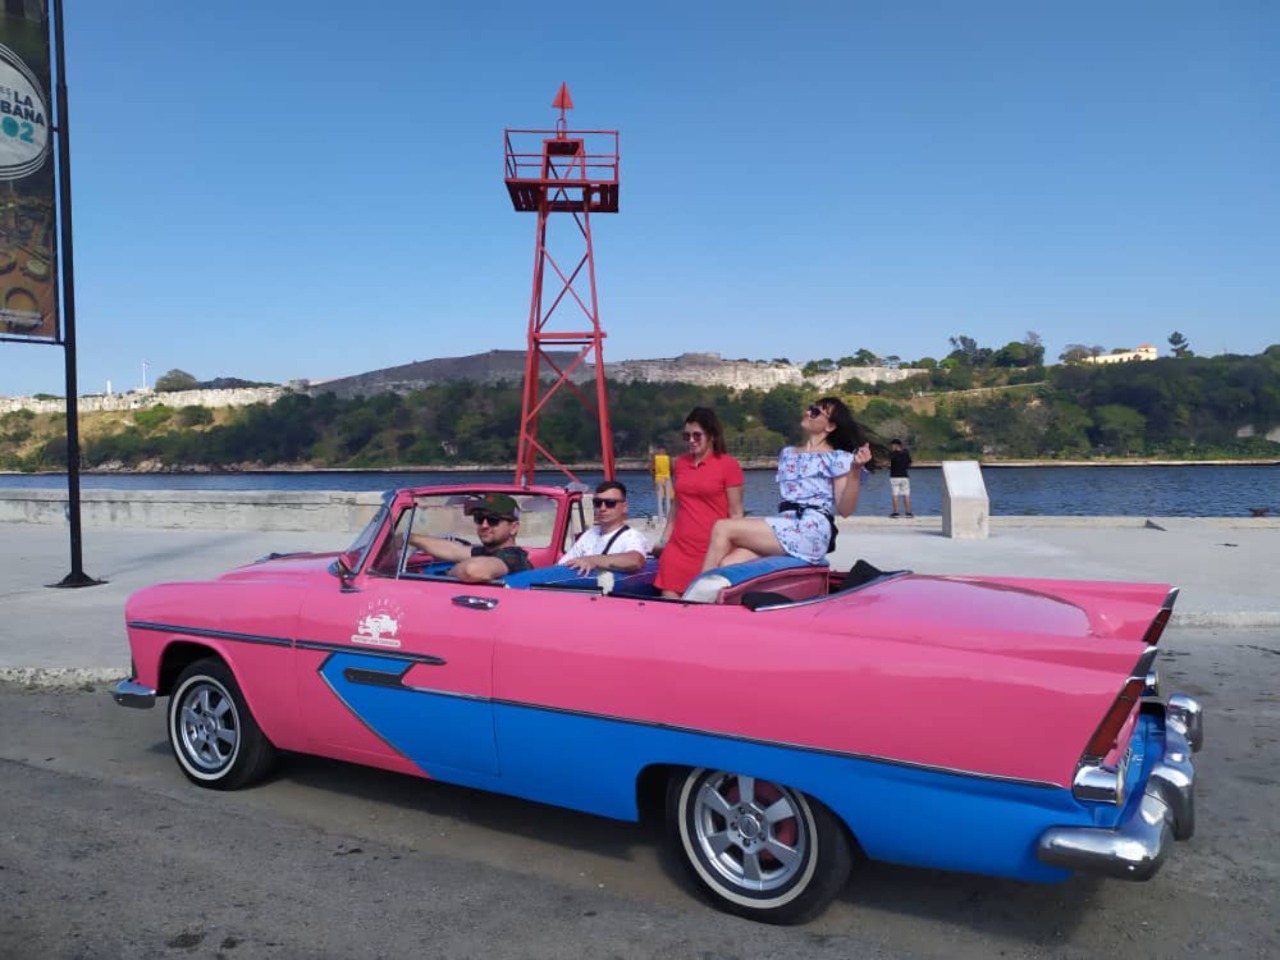 Гавана на розовом кабриолете | Цена 375€, отзывы, описание экскурсии